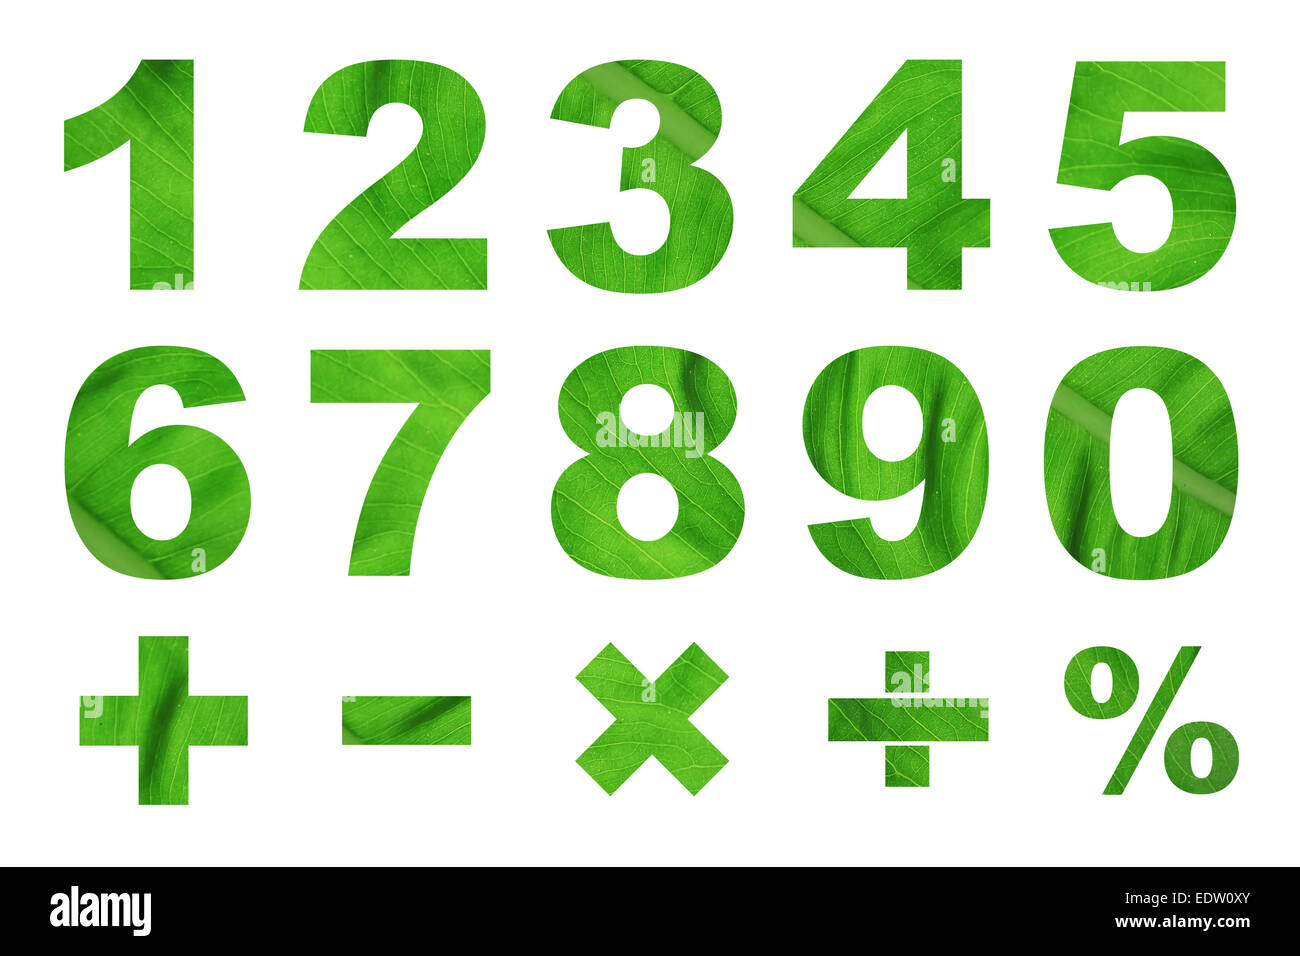 eine Null-Nummern und grundlegende mathematische Symbole aus grünen Blatt Bild gemacht Stockfoto